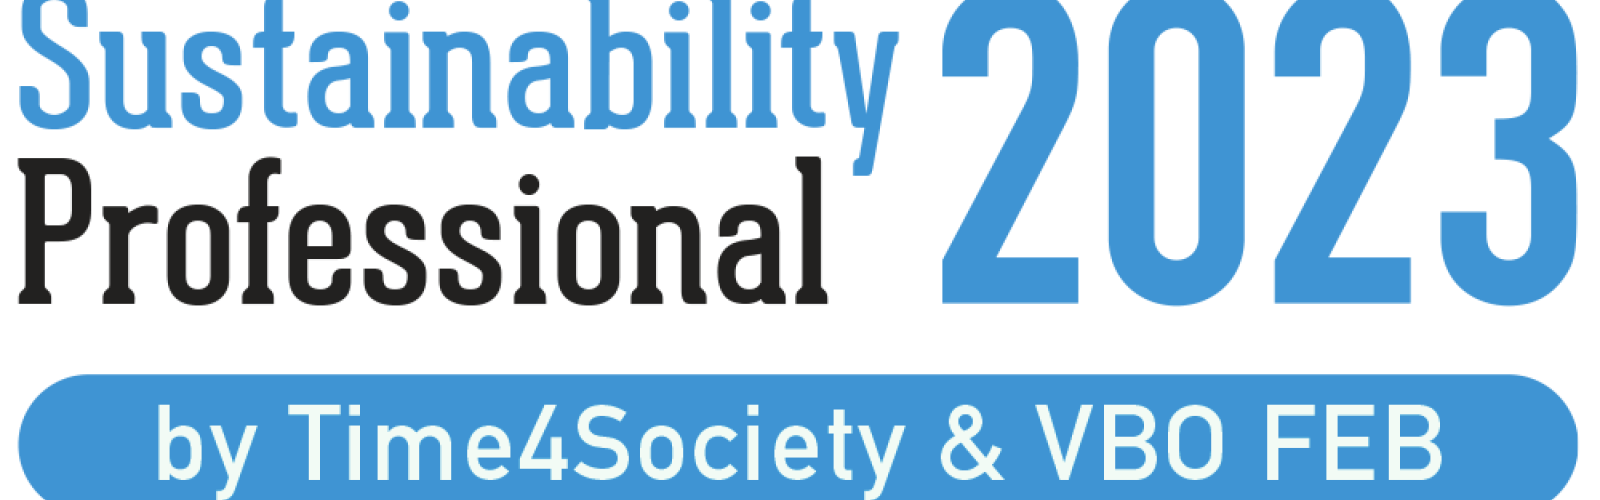 logo Sustainability Professional 2023